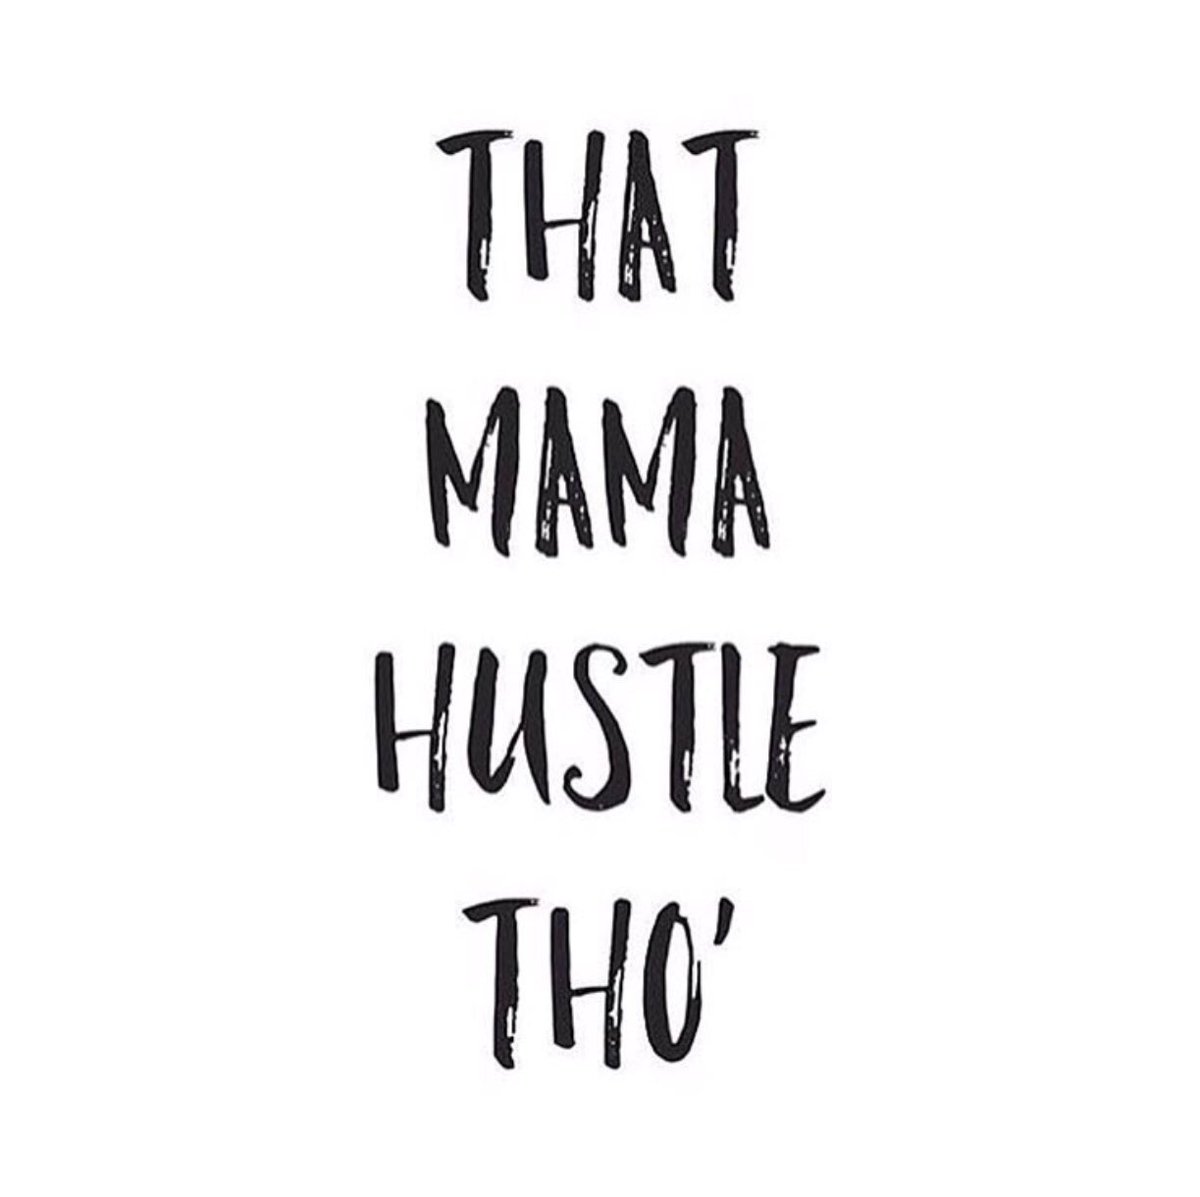 Nothing compares‼️ #mompreneur #morethanamom #ModishMommies #momtrepreneur #entrepreneur #momswhohustle #momswhoinspire #momboss #hustle